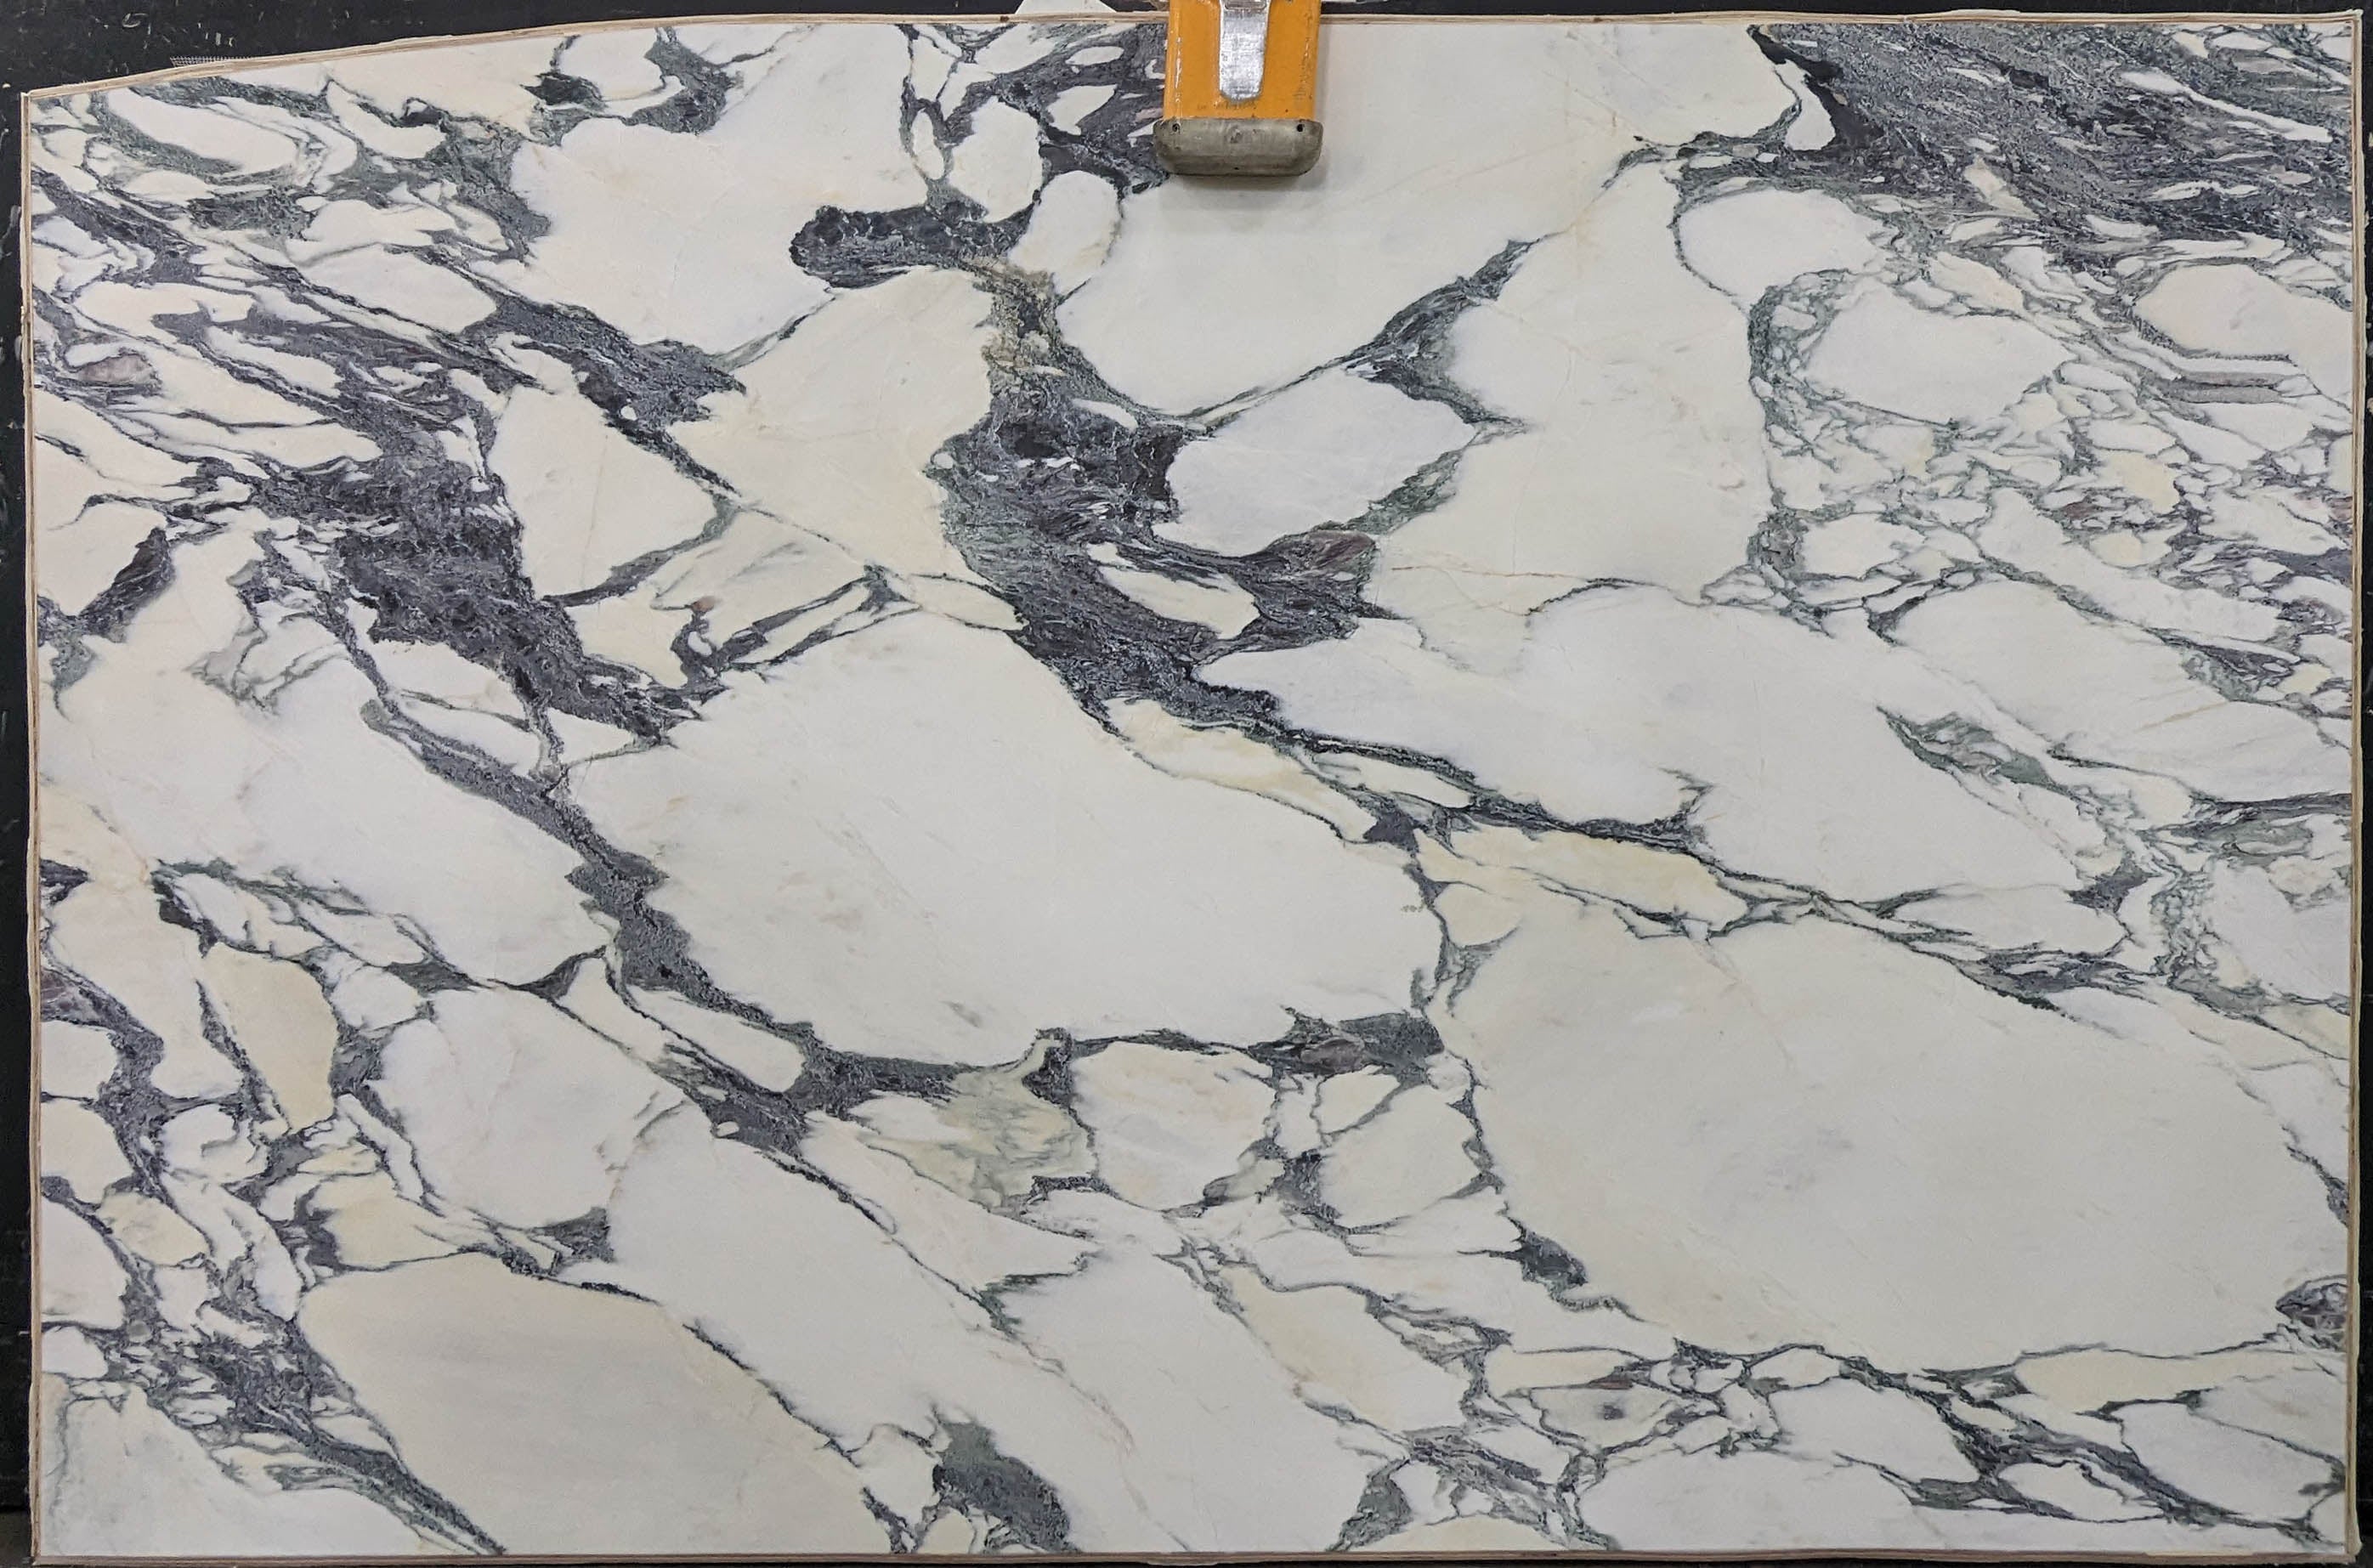  Calacatta Viola Marble Slab 3/4 - 13737A#48 -  74x116 